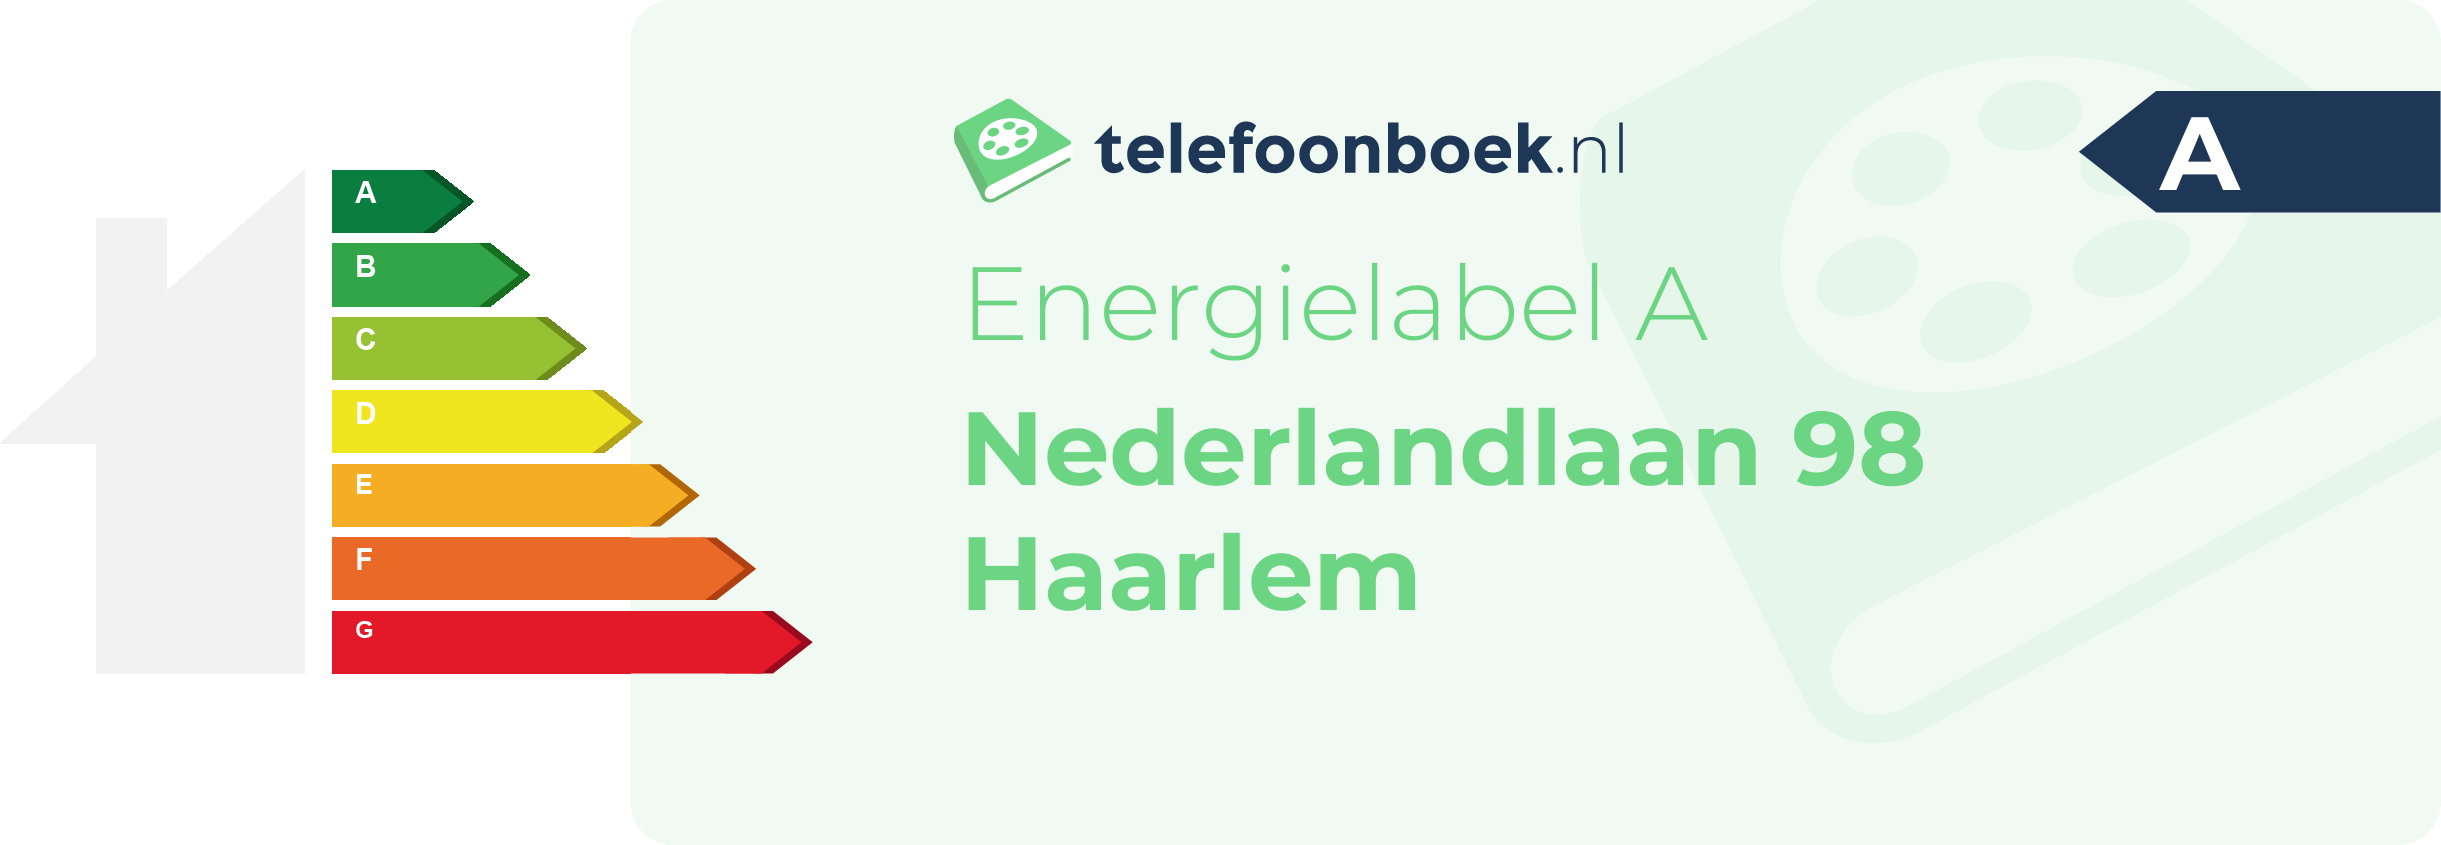 Energielabel Nederlandlaan 98 Haarlem